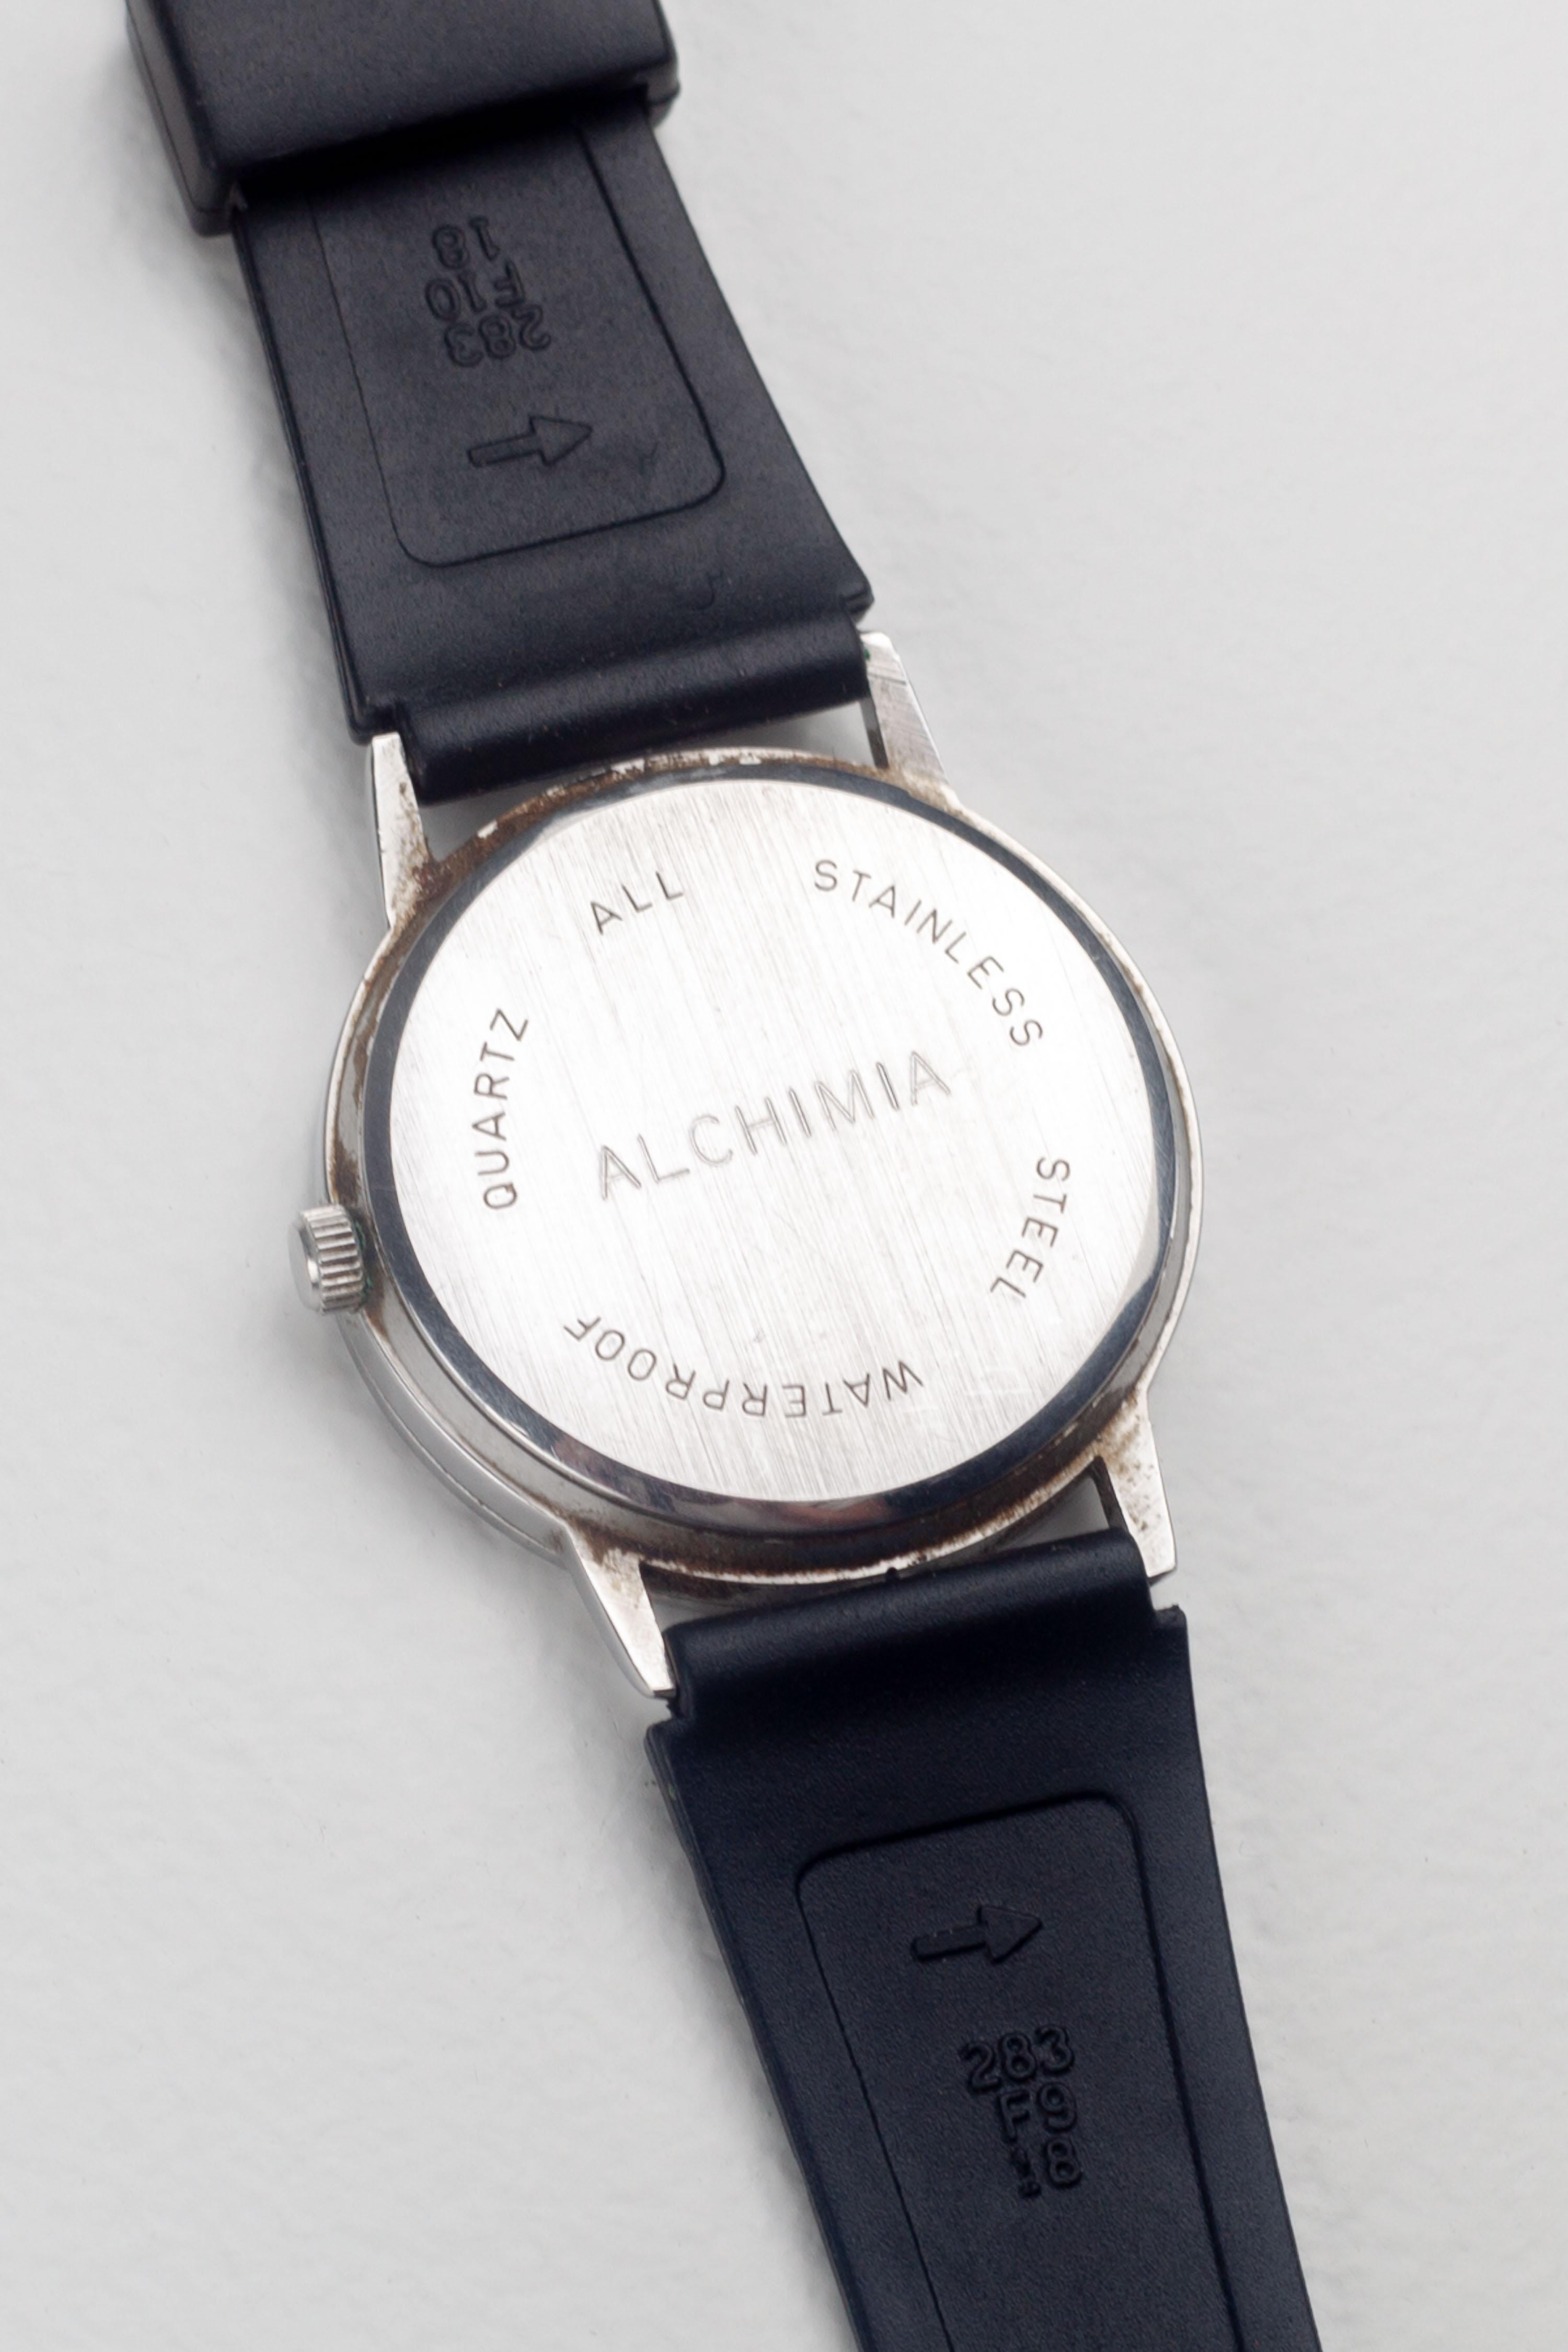 Post-Modern Alessandro Mendini Wristwatch for Studio Alchimia, Museo Alchimia 1986 For Sale